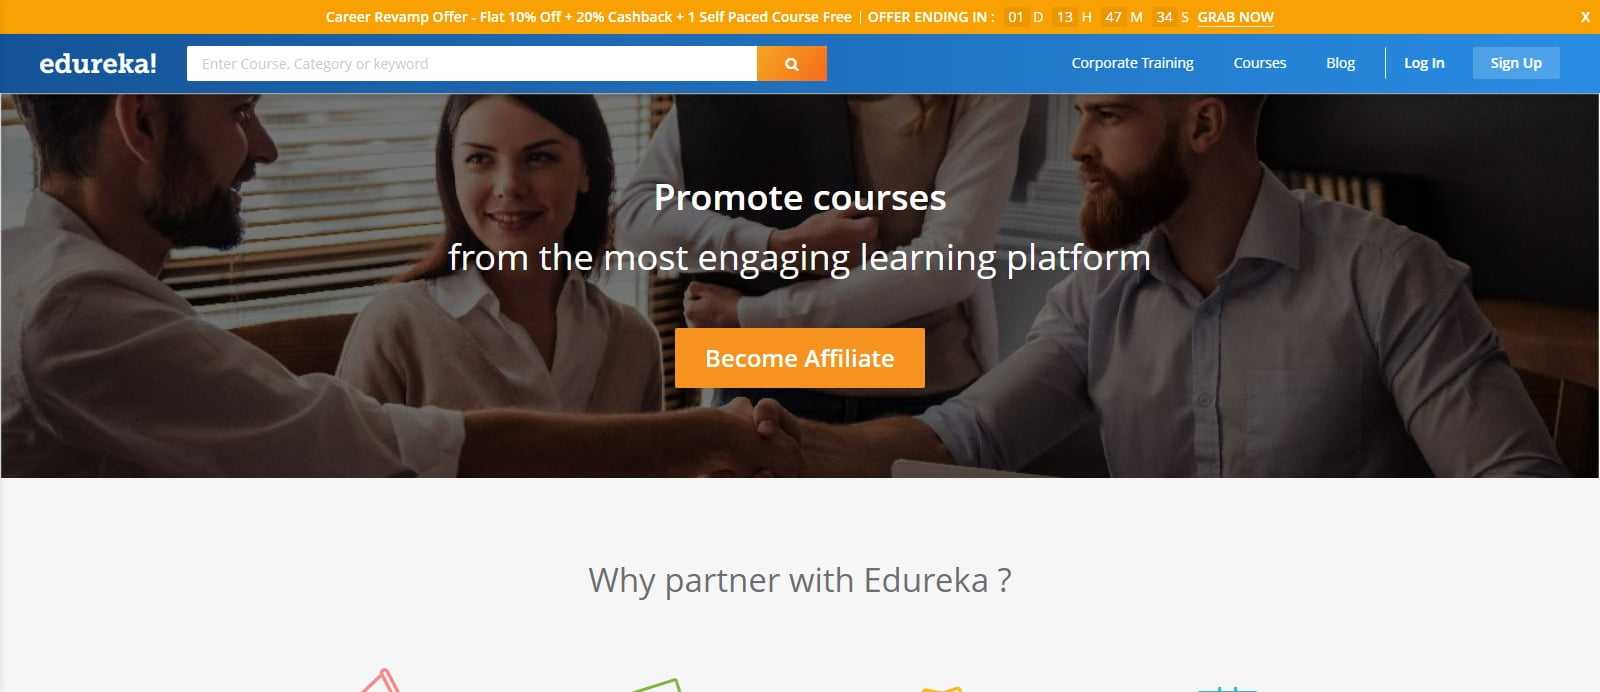 Edureka Affiliates Program Review: 15% - 30% Commission on Each Sale